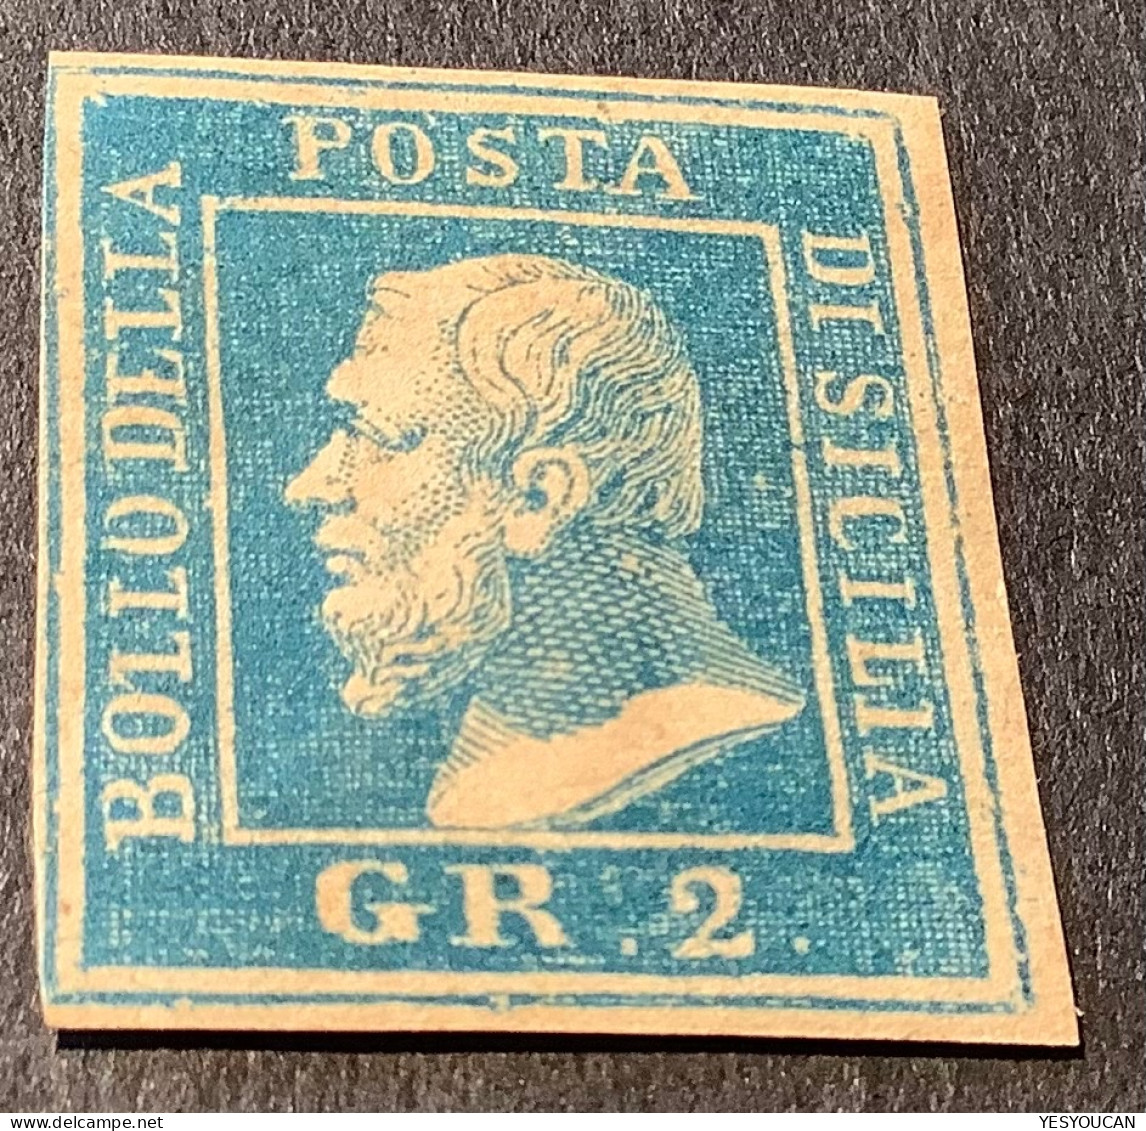 Sicilia 1859 Rare Lithographic Forgery (falso) Or Essay (saggi)? (Sicily Sicile Italy Italia Italie Essai/faux ? - Sicilia